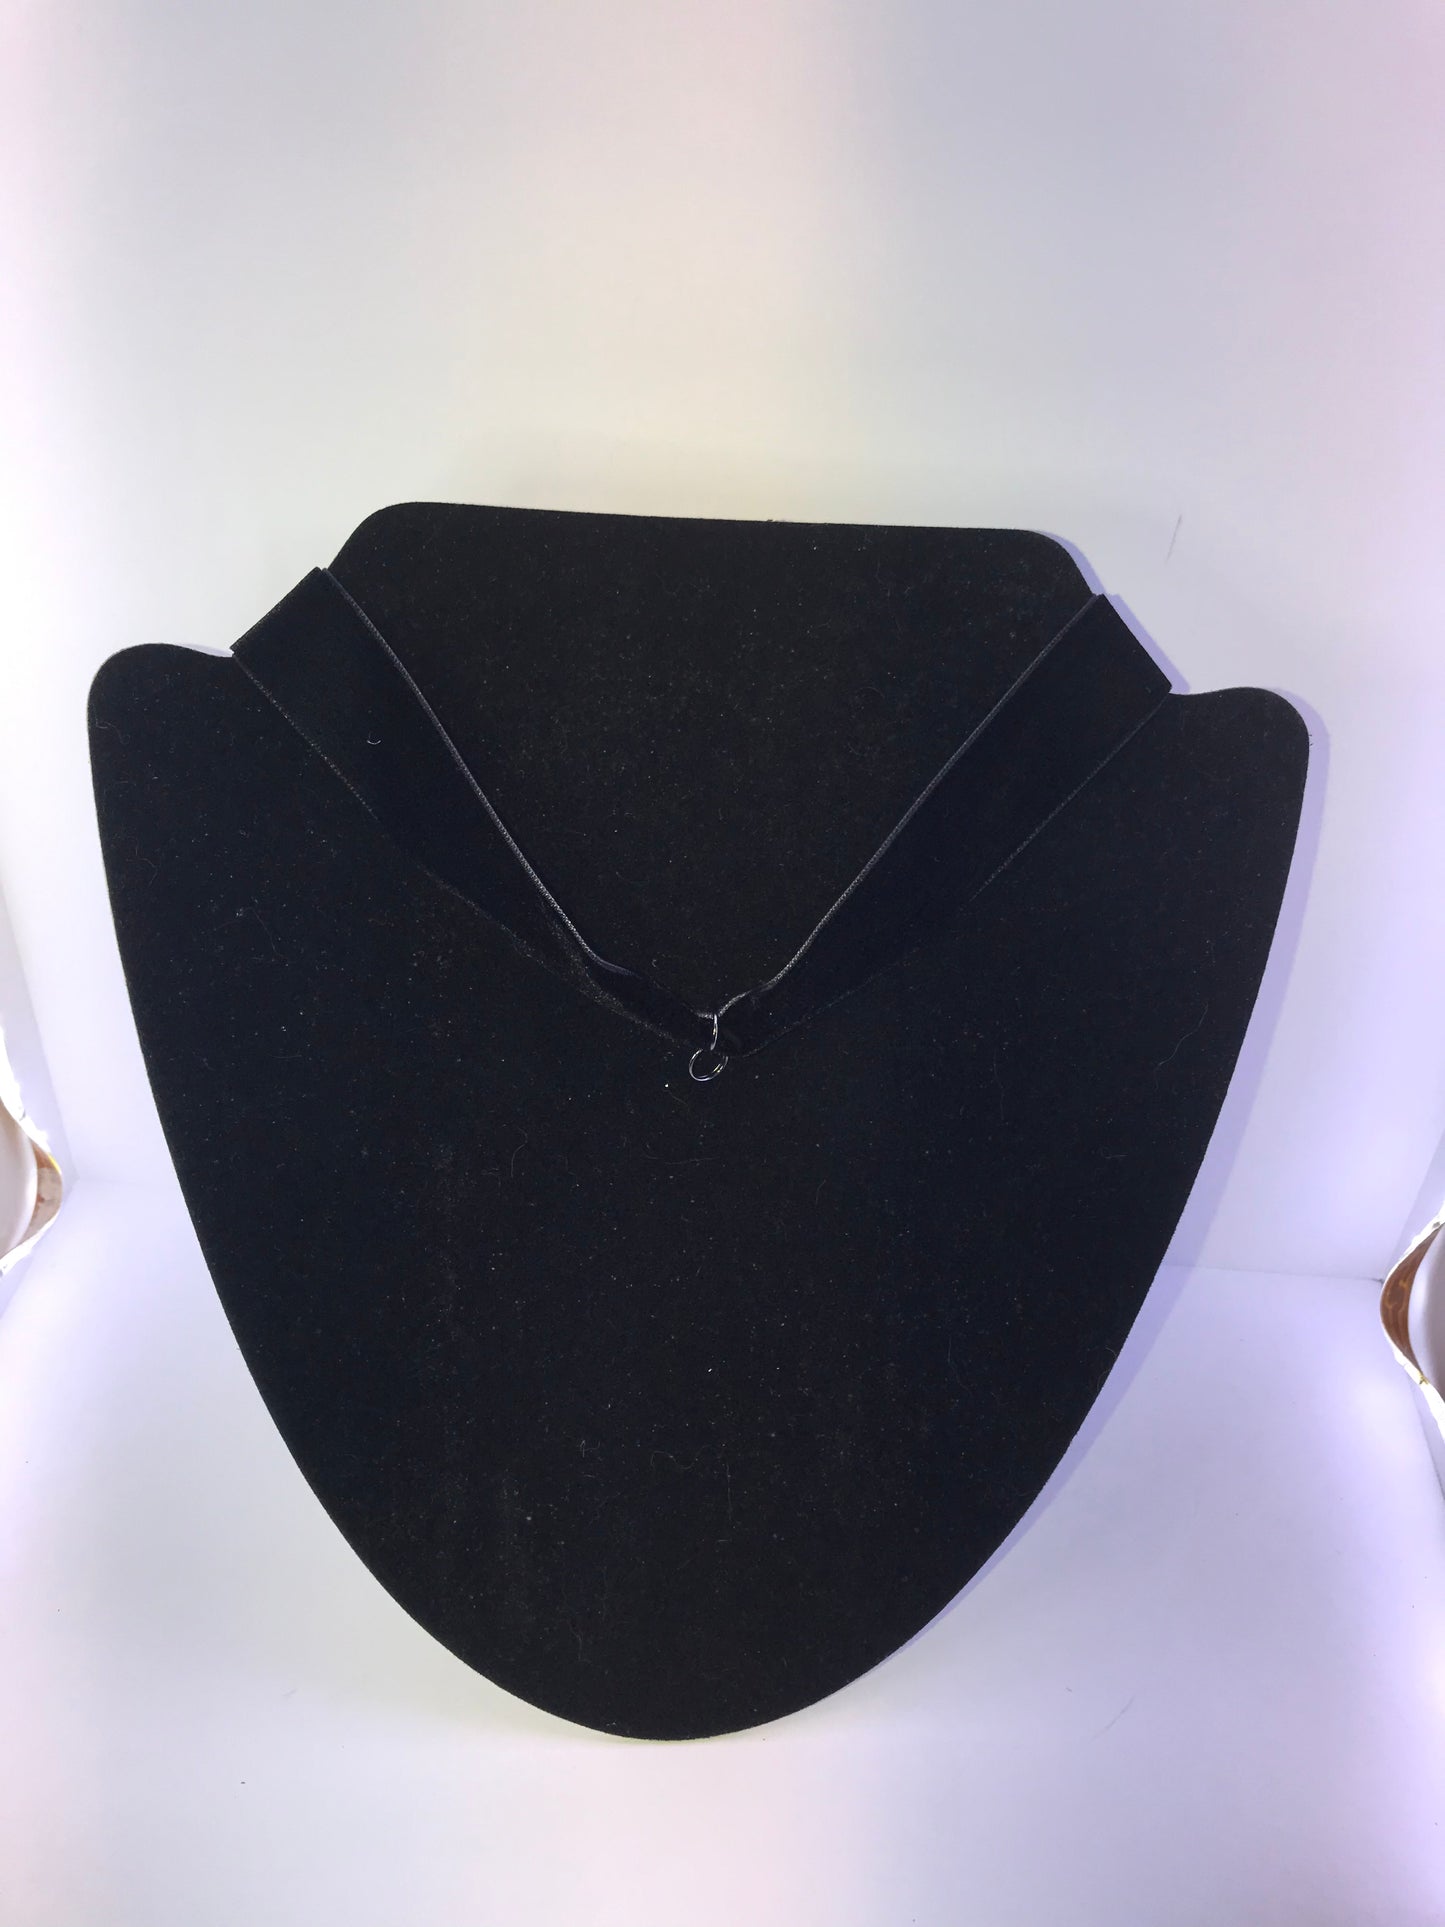 18" long Black Velvet Choker Necklace